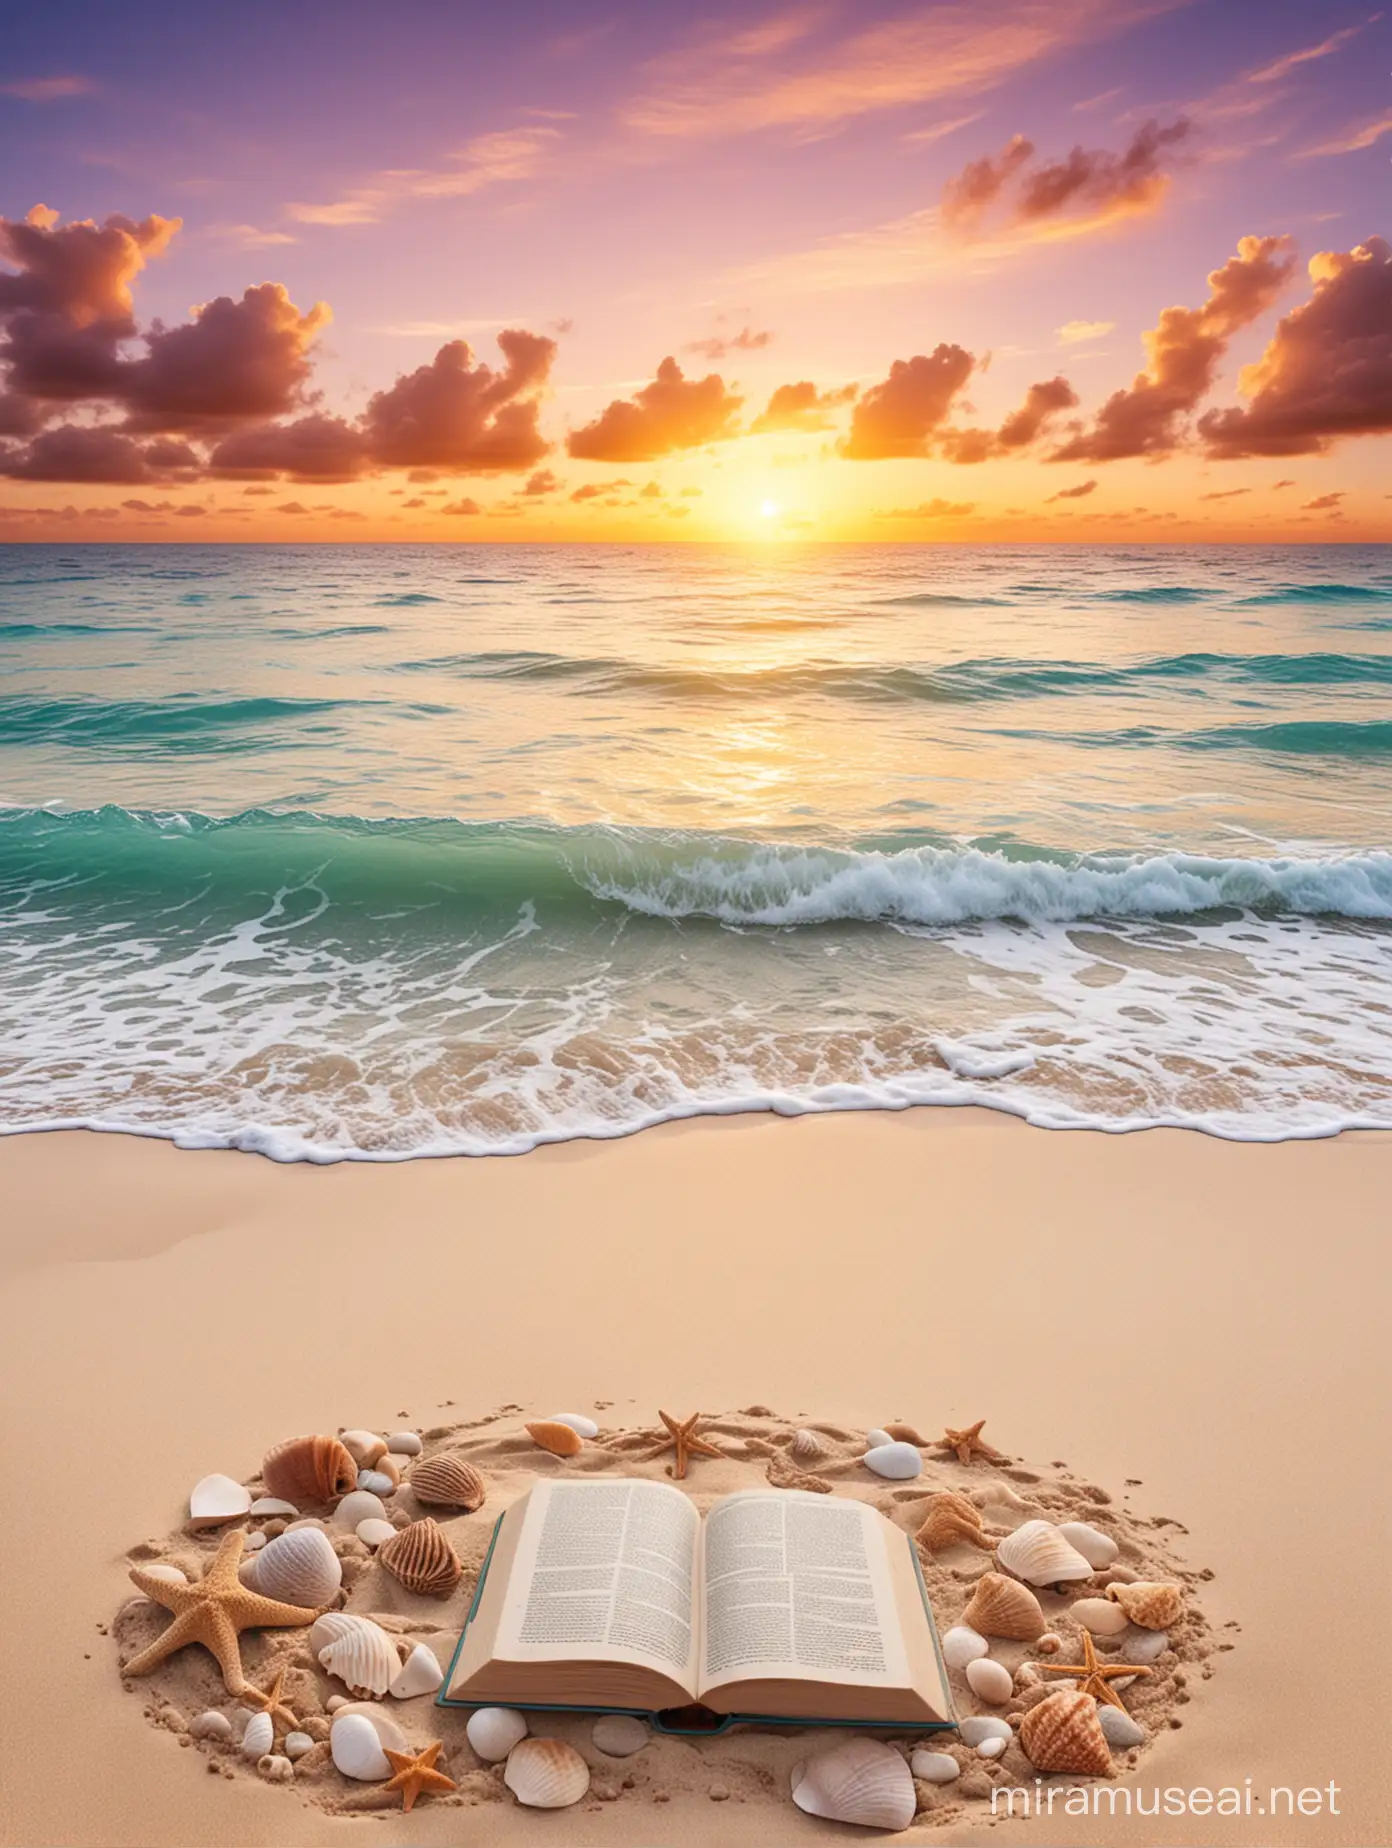 fondó fotográfico, playa caribe paradisiaca con libros en la arena y caracola ,atardecer